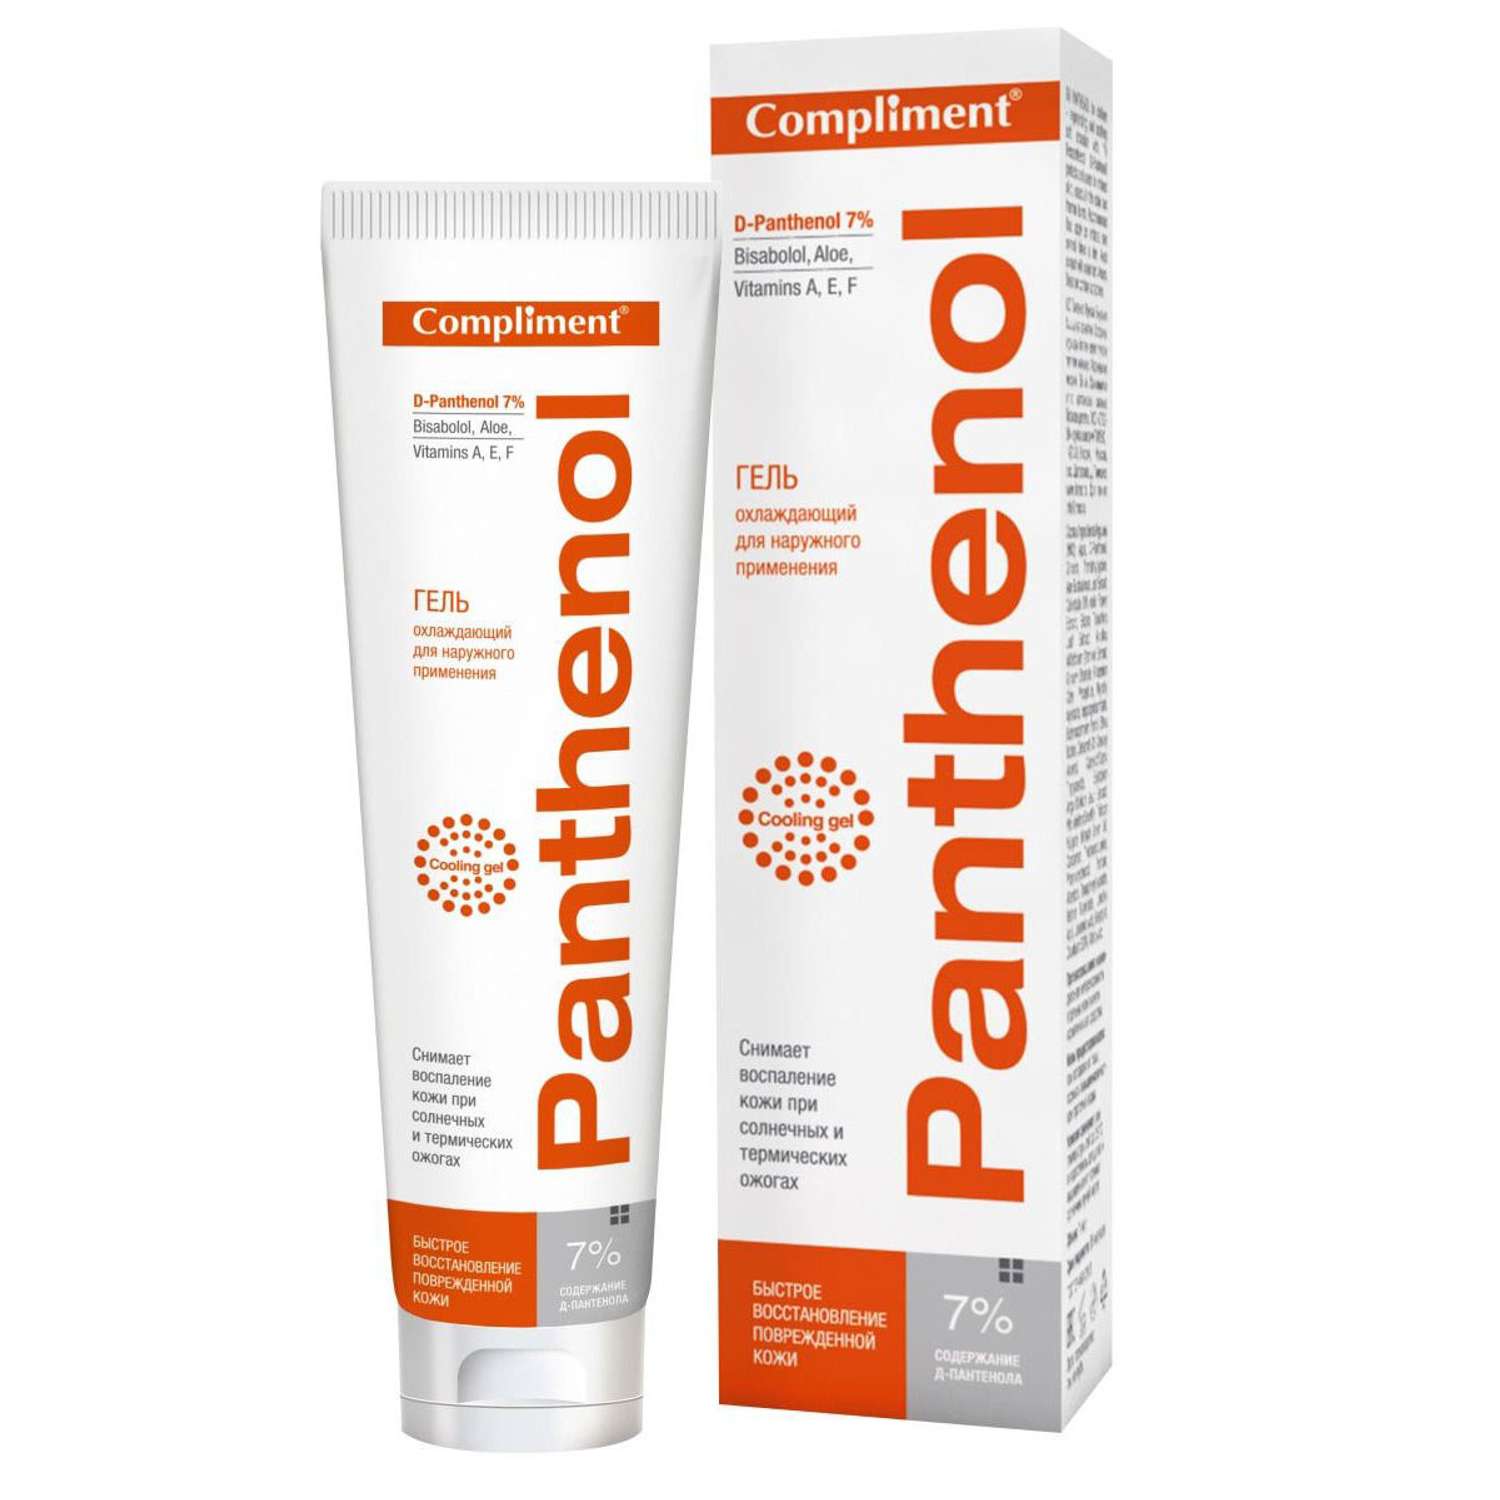 Гель Compliment Panthenol охлаждающий быстрое восстановление поврежденной кожи 75мл - фото 1